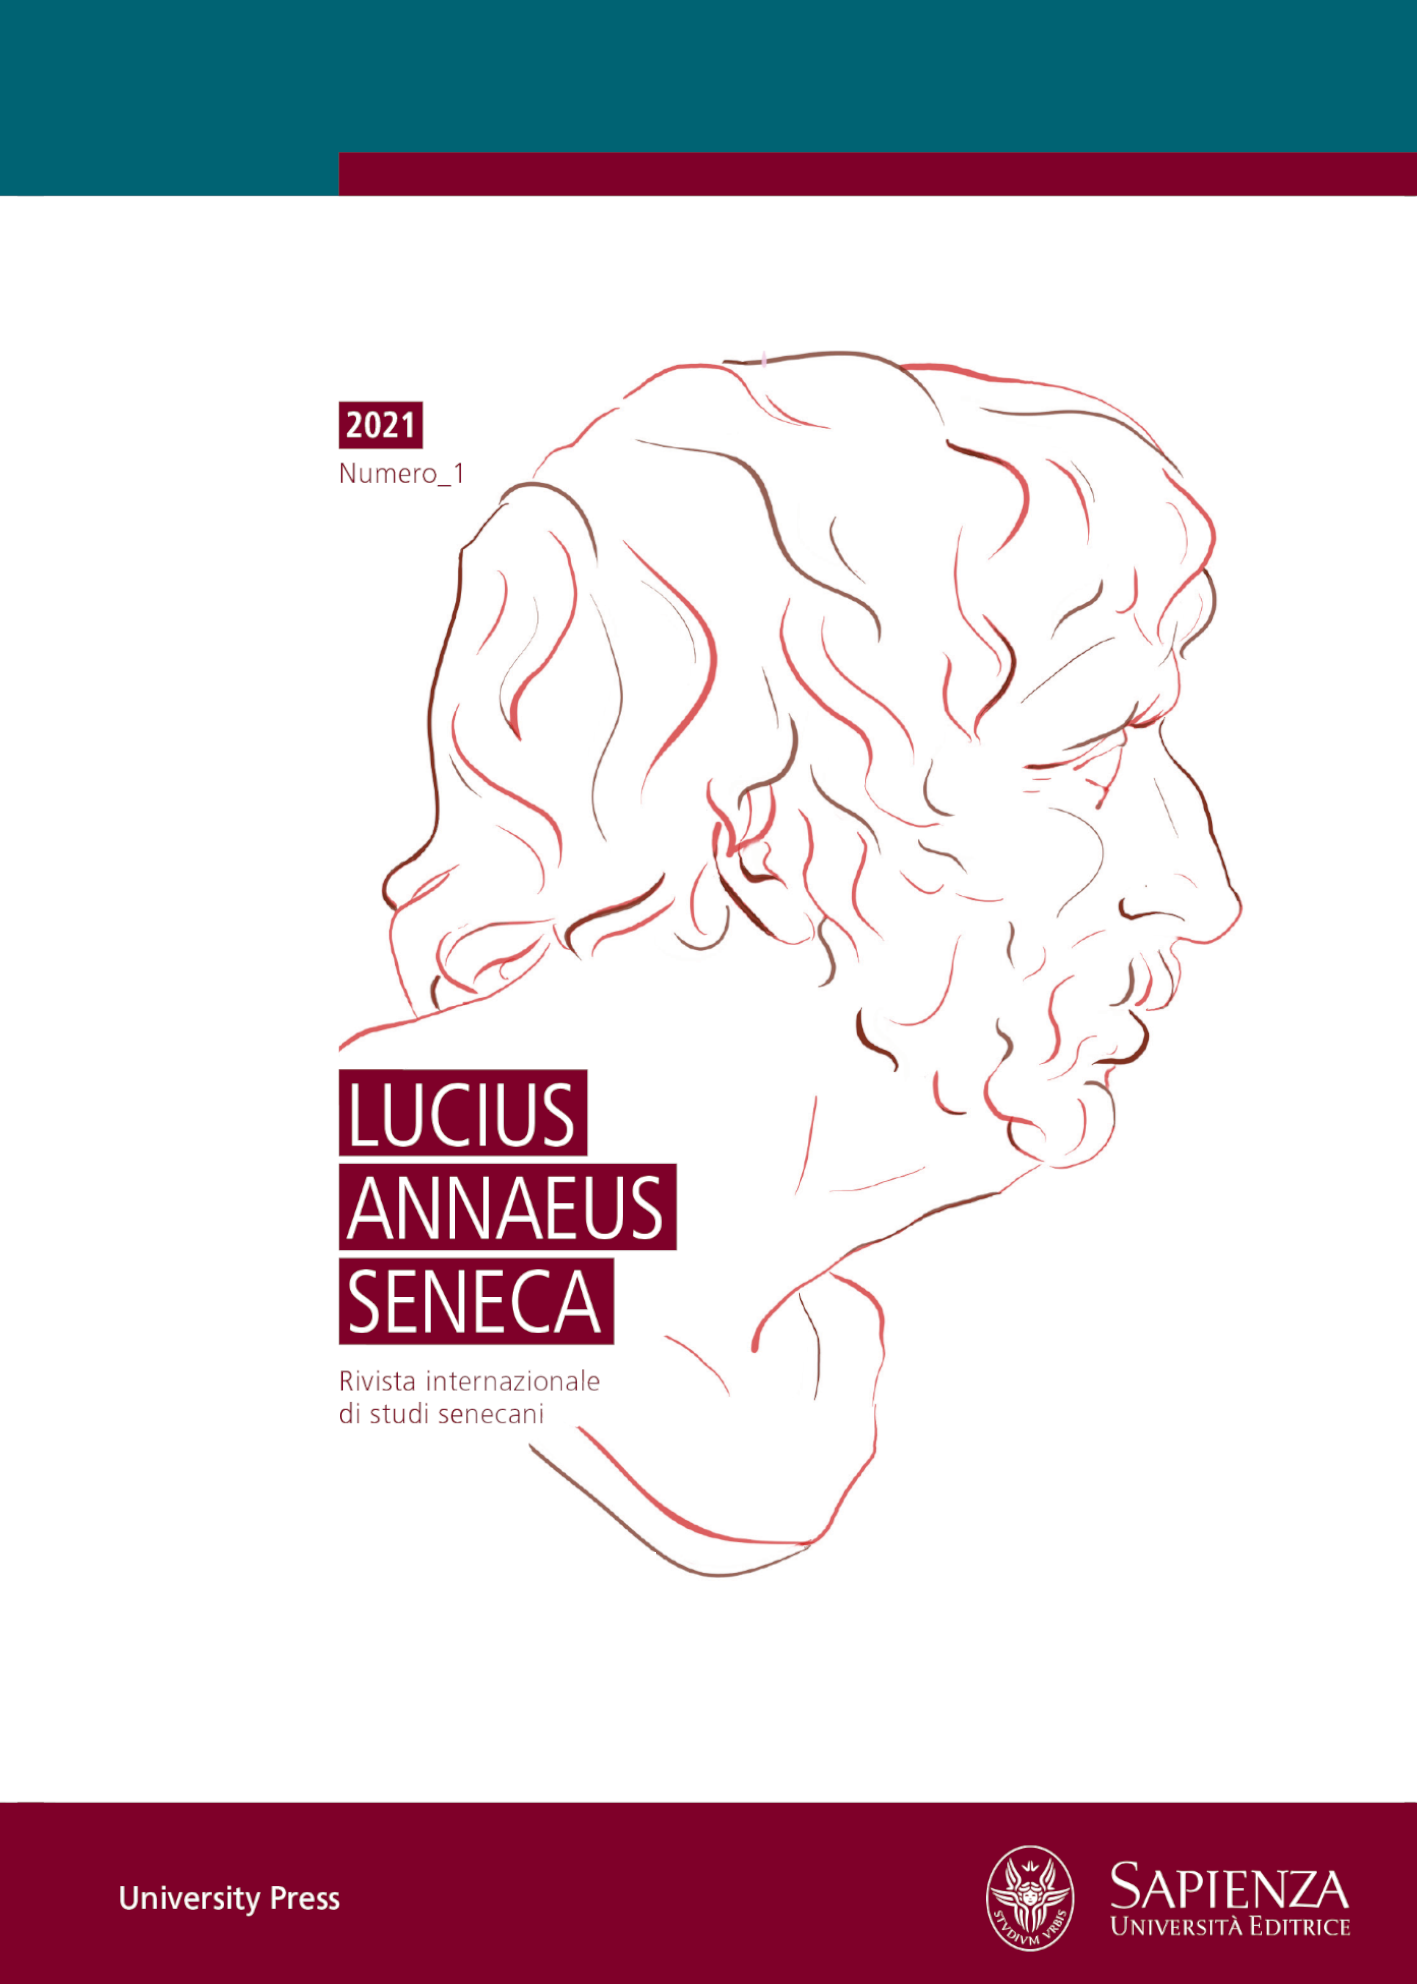 Lucius Annaeus Seneca - home page